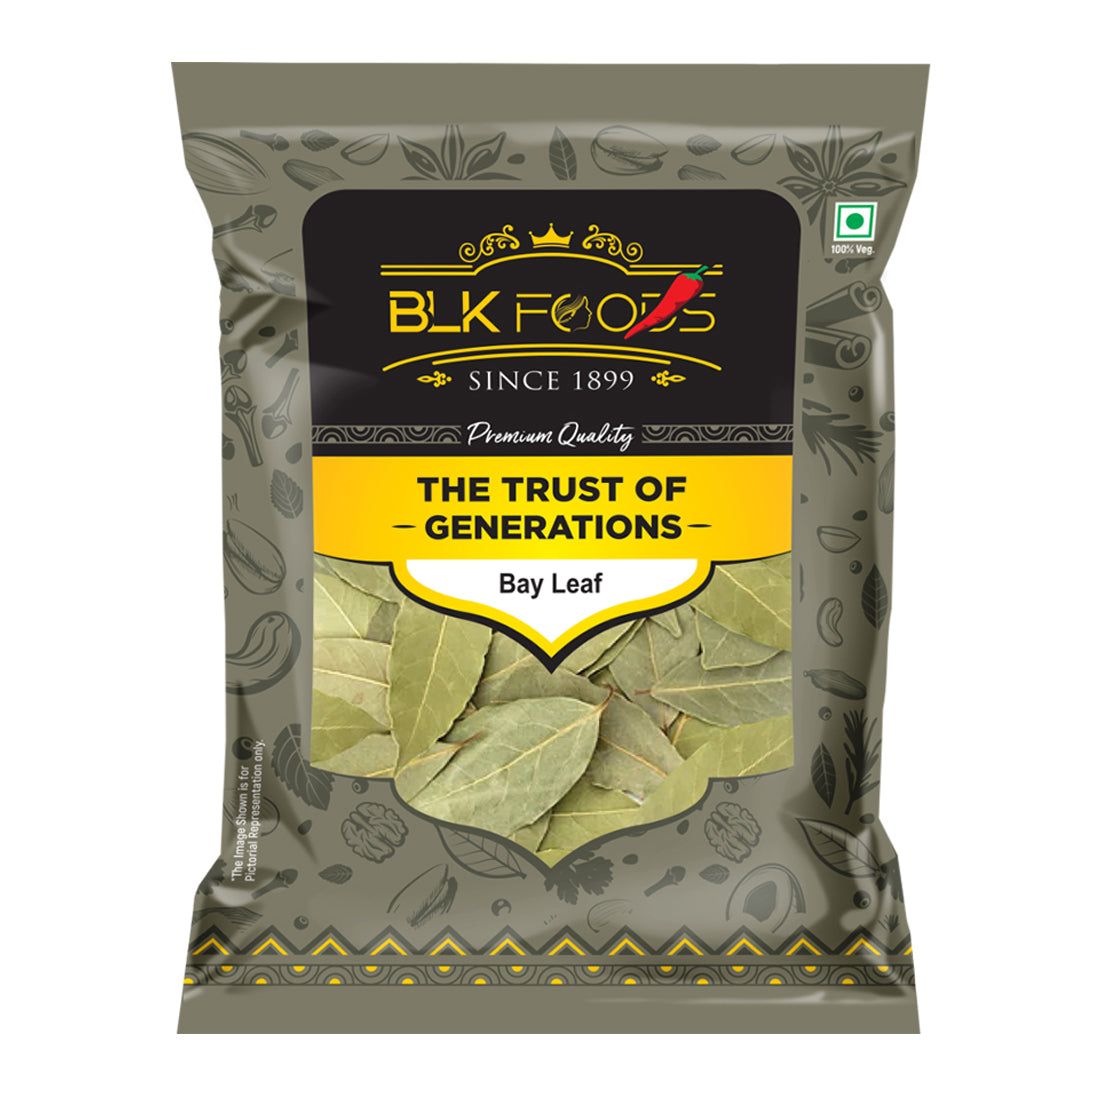 BLK Foods Daily Bay Leaf (Tej Patta) 100g